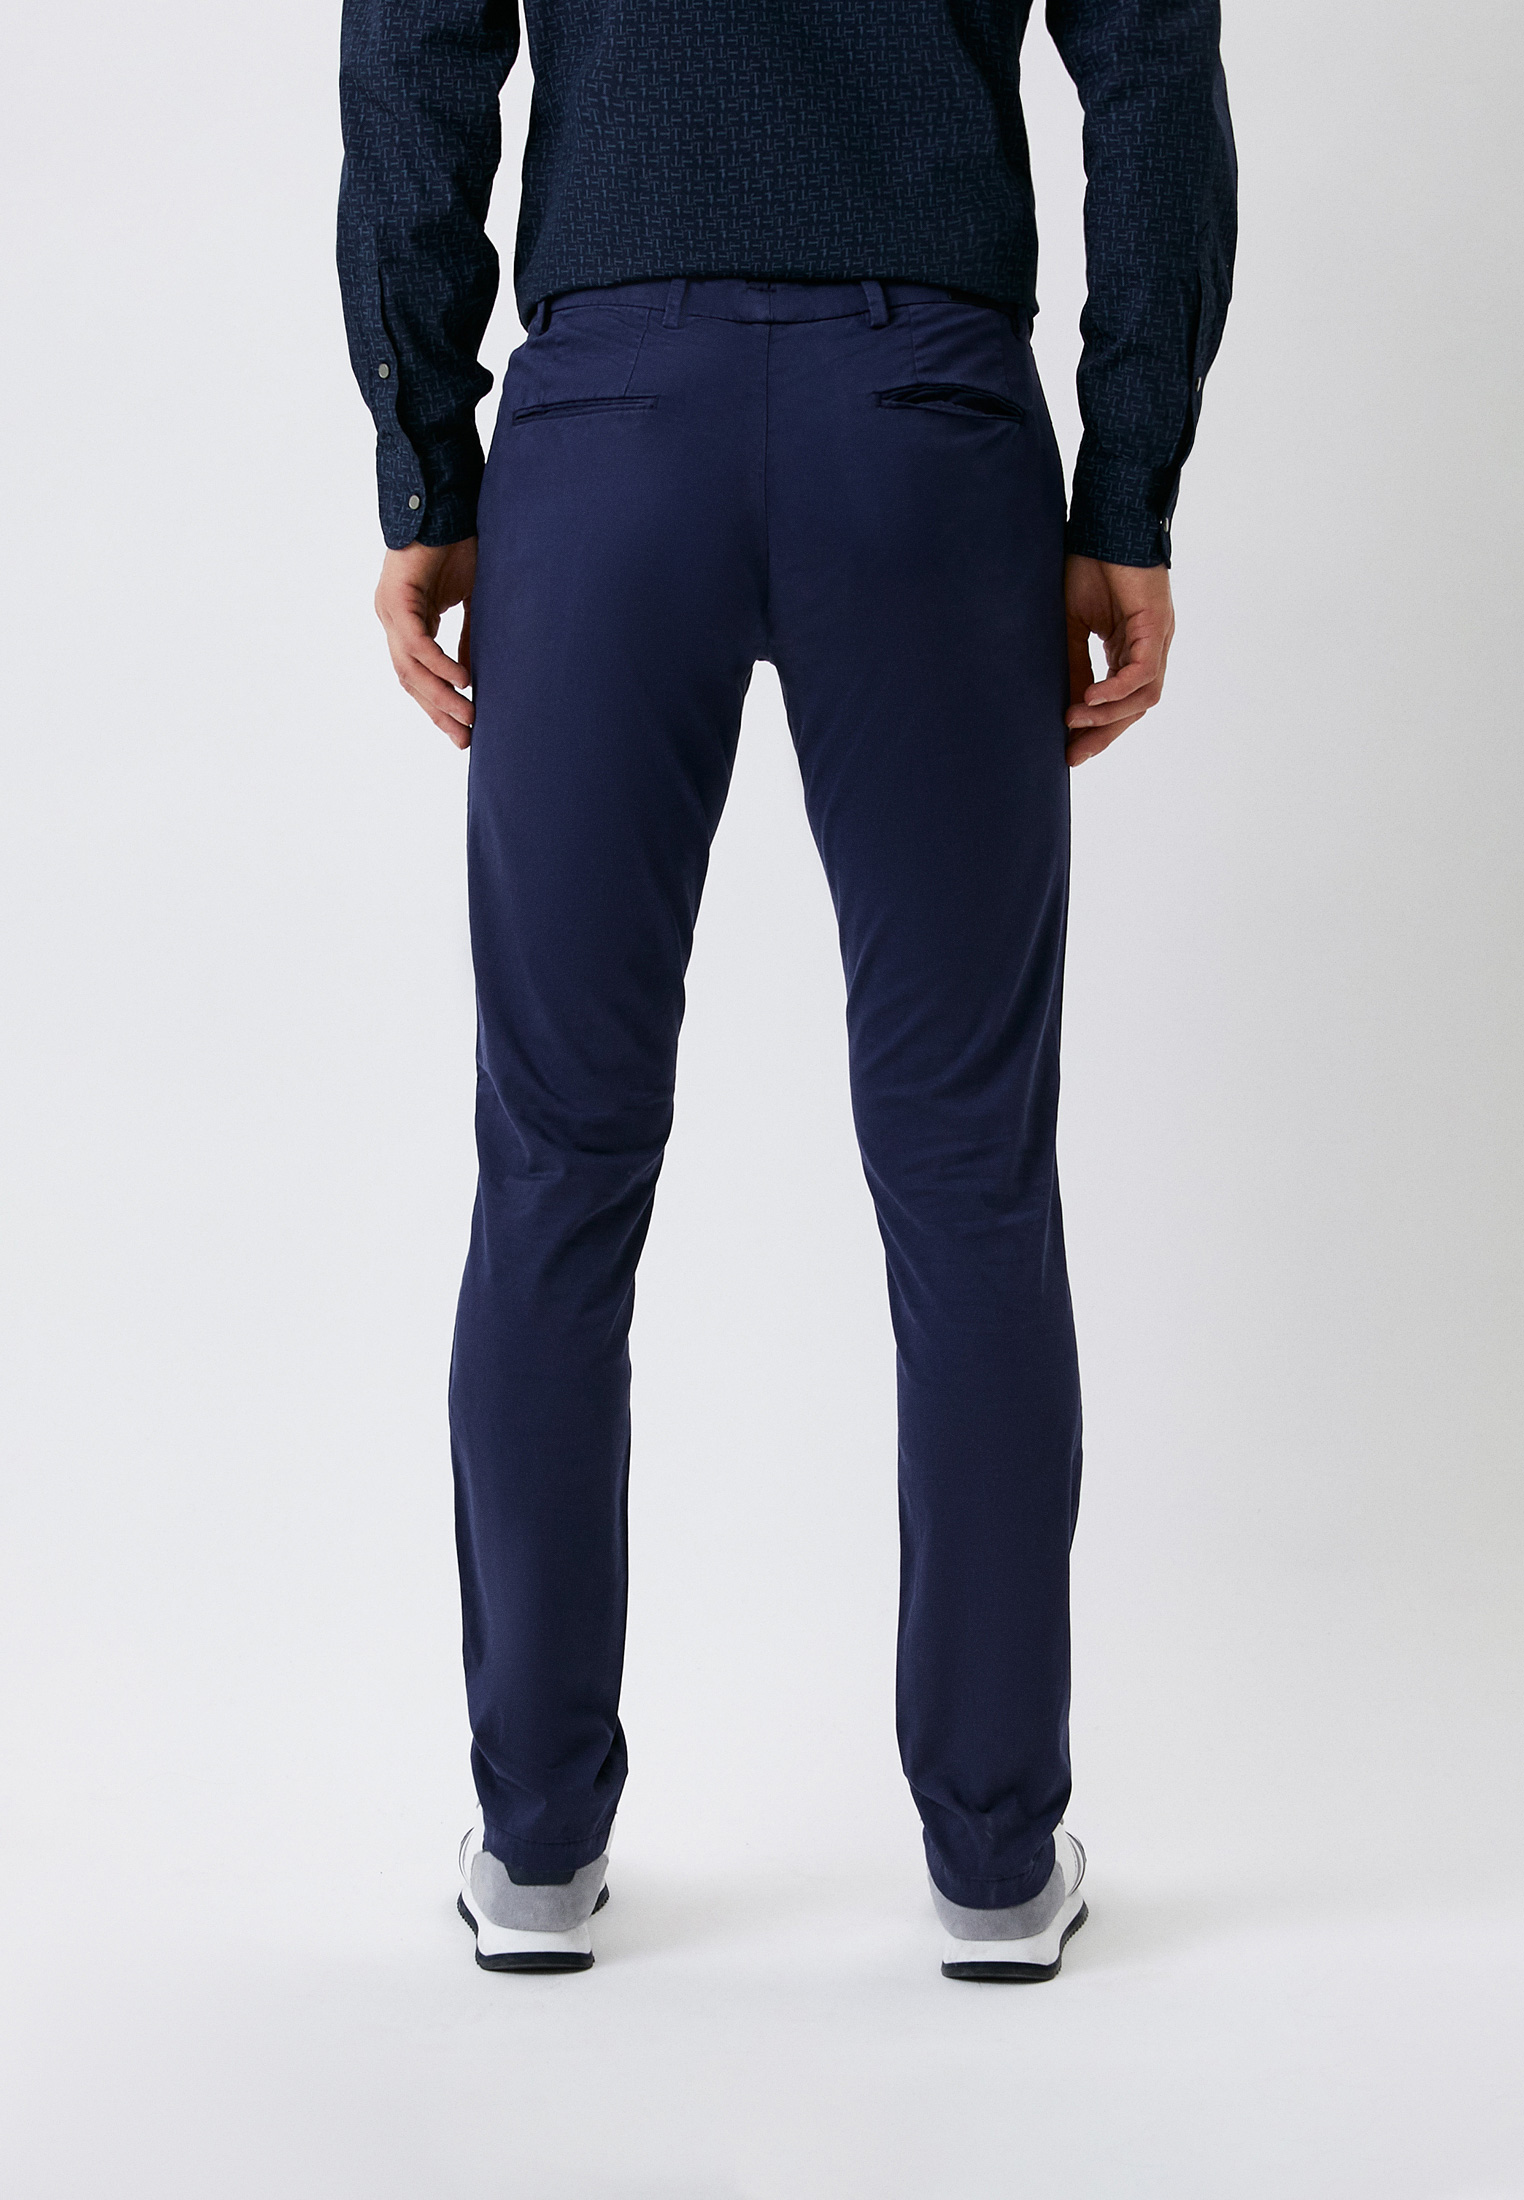 Мужские повседневные брюки Trussardi (Труссарди) 52P00000-1T002361-H-001: изображение 3